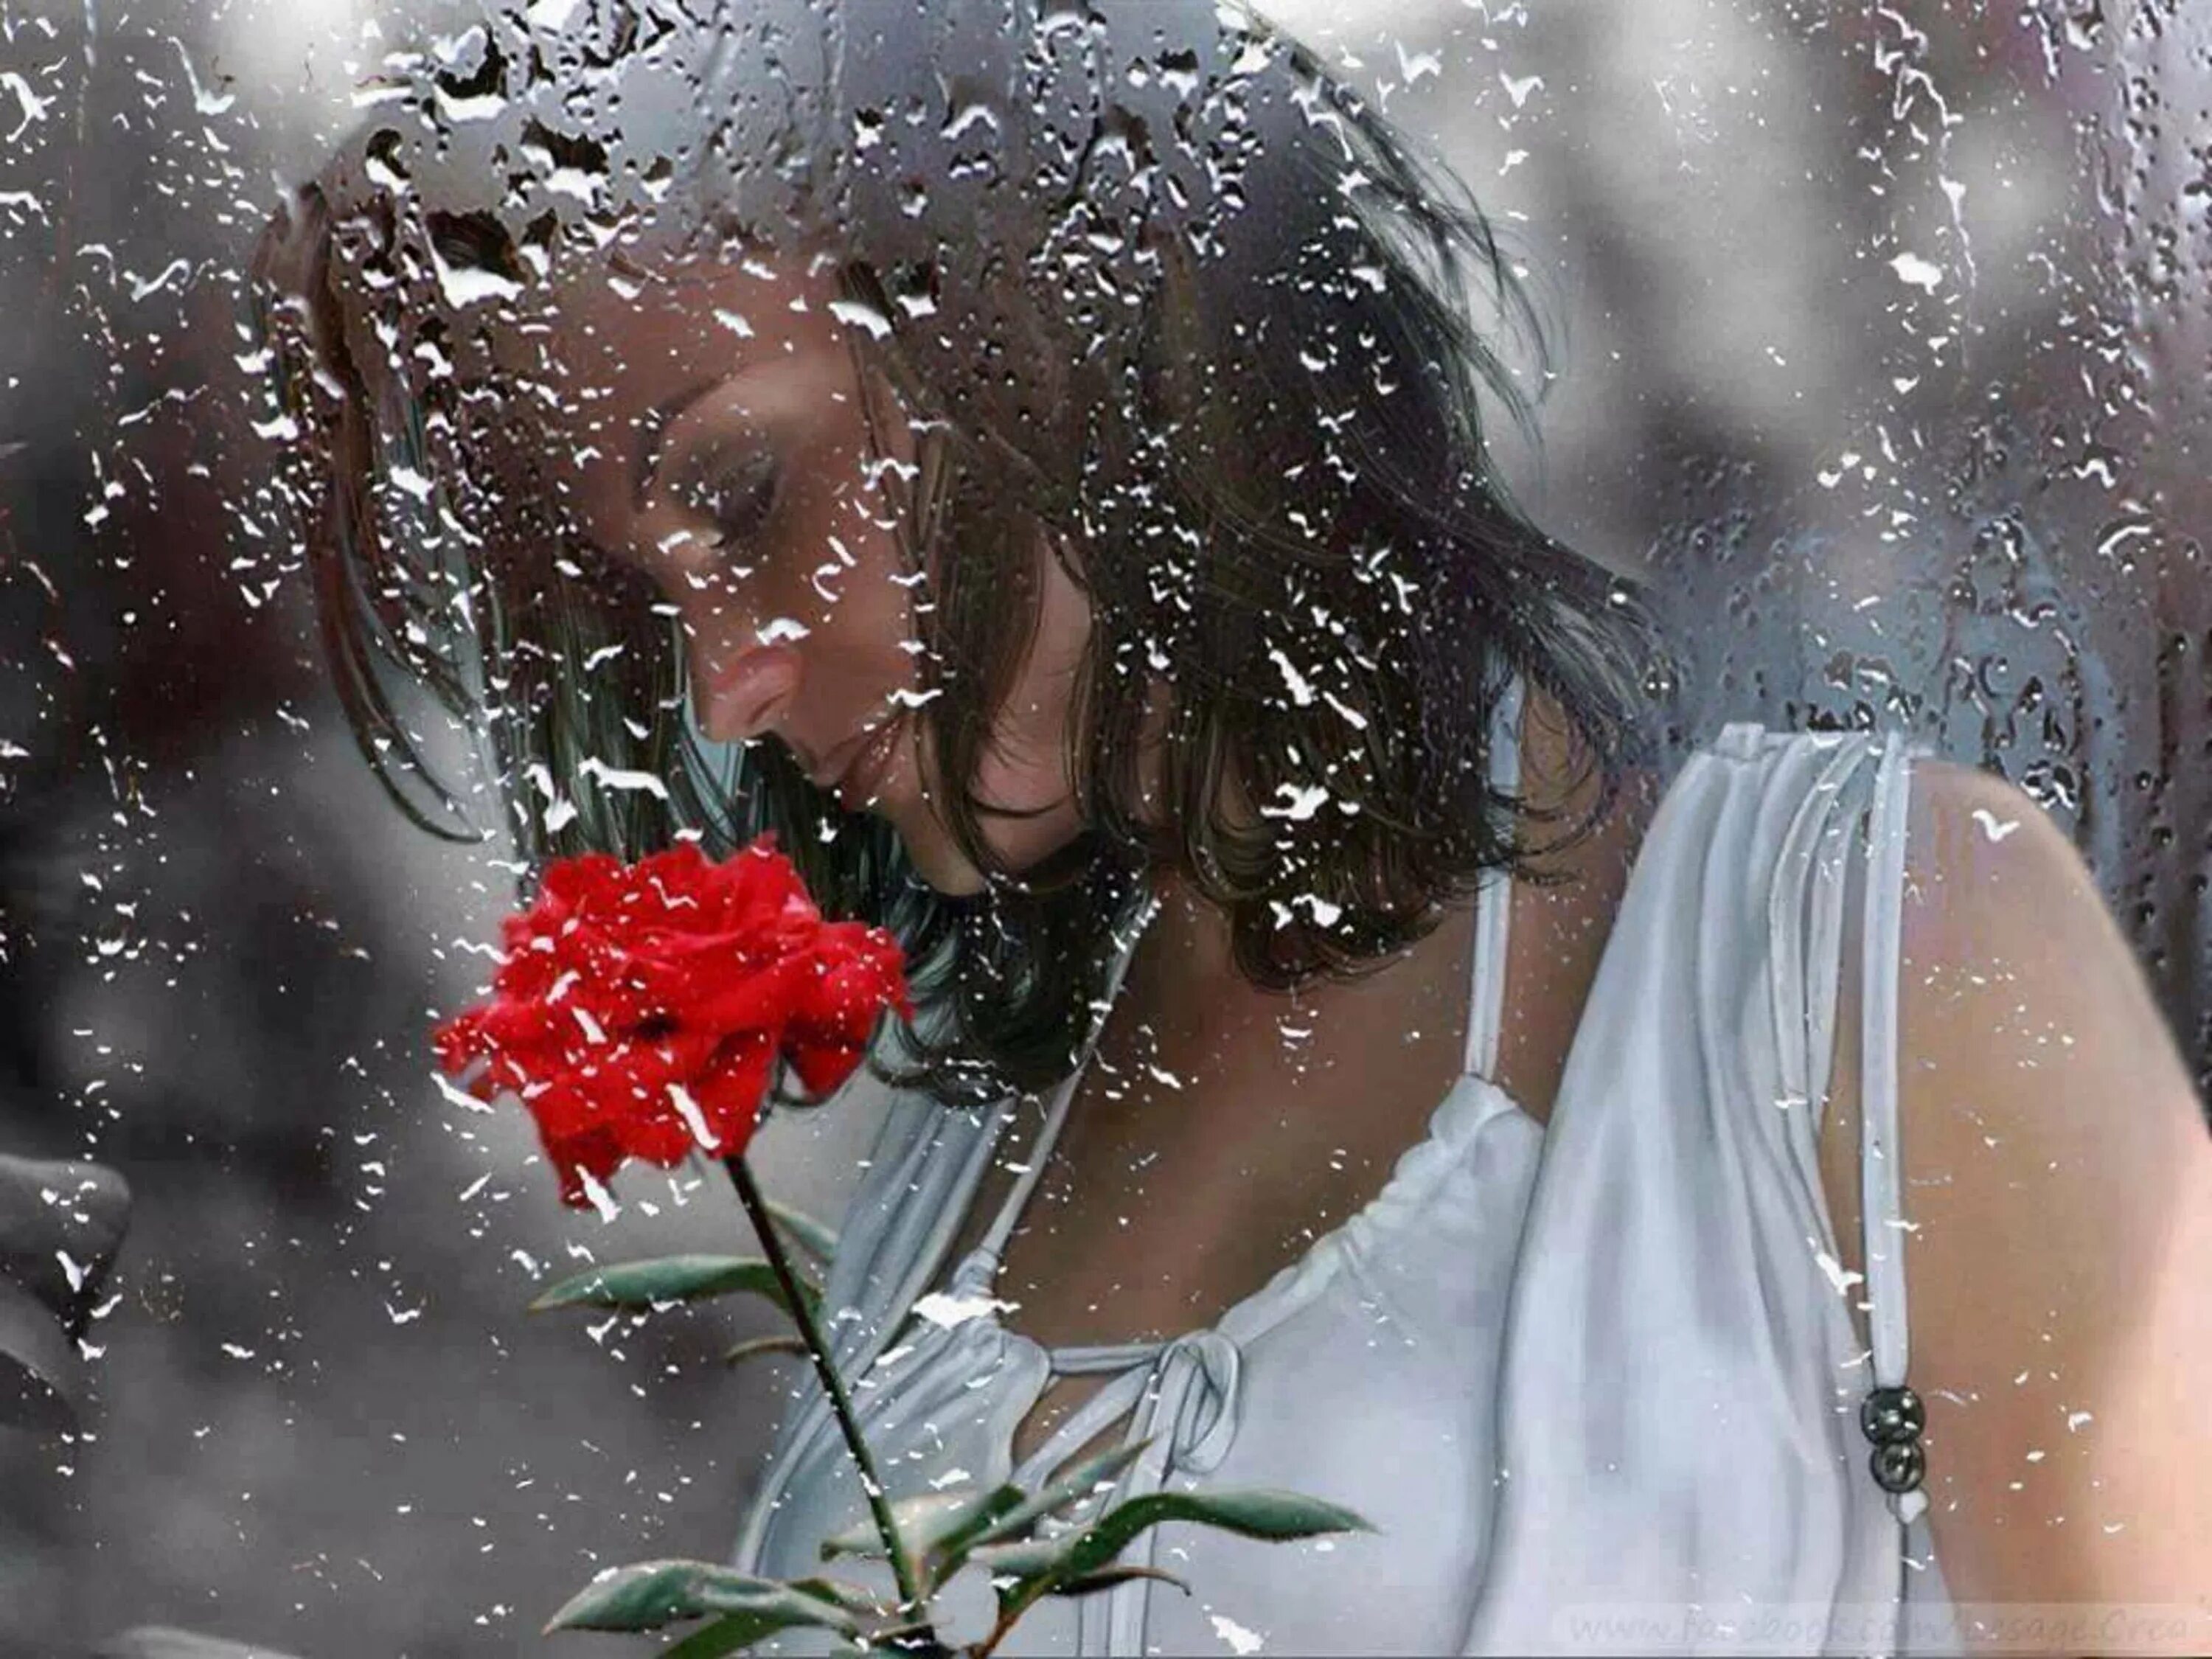 Песню пусть грусть. Женщина дождя. Цветы на дождливом окне. Слезы души. Девушка за мокрым стеклом.